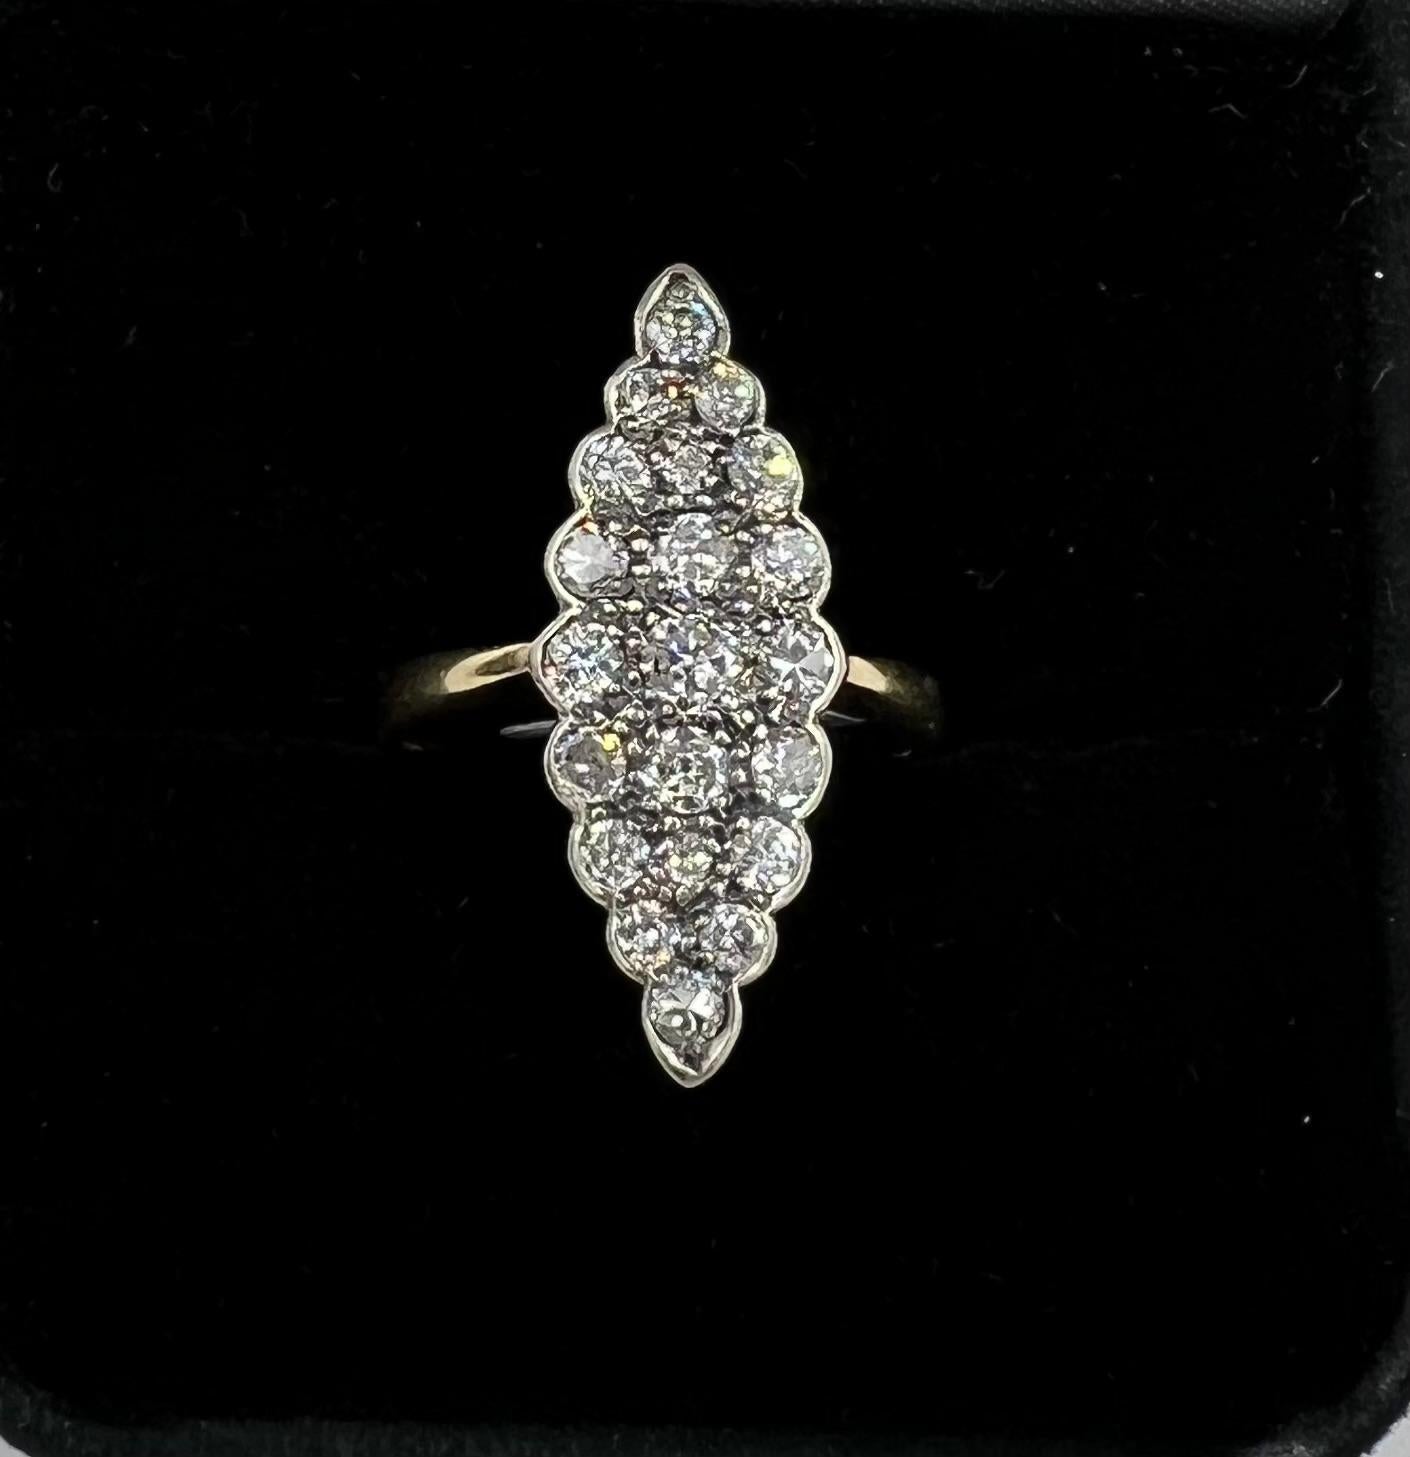 Vintage Navette Diamond Cluster Ring, um 1930.
 Dieser Vintage Navette Diamond Cluster Ring ist ein zeitloses Schmuckstück, das Eleganz und Raffinesse ausstrahlt. Mit seinem verschlungenen Design und den funkelnden Diamanten ist dieser Ring ein